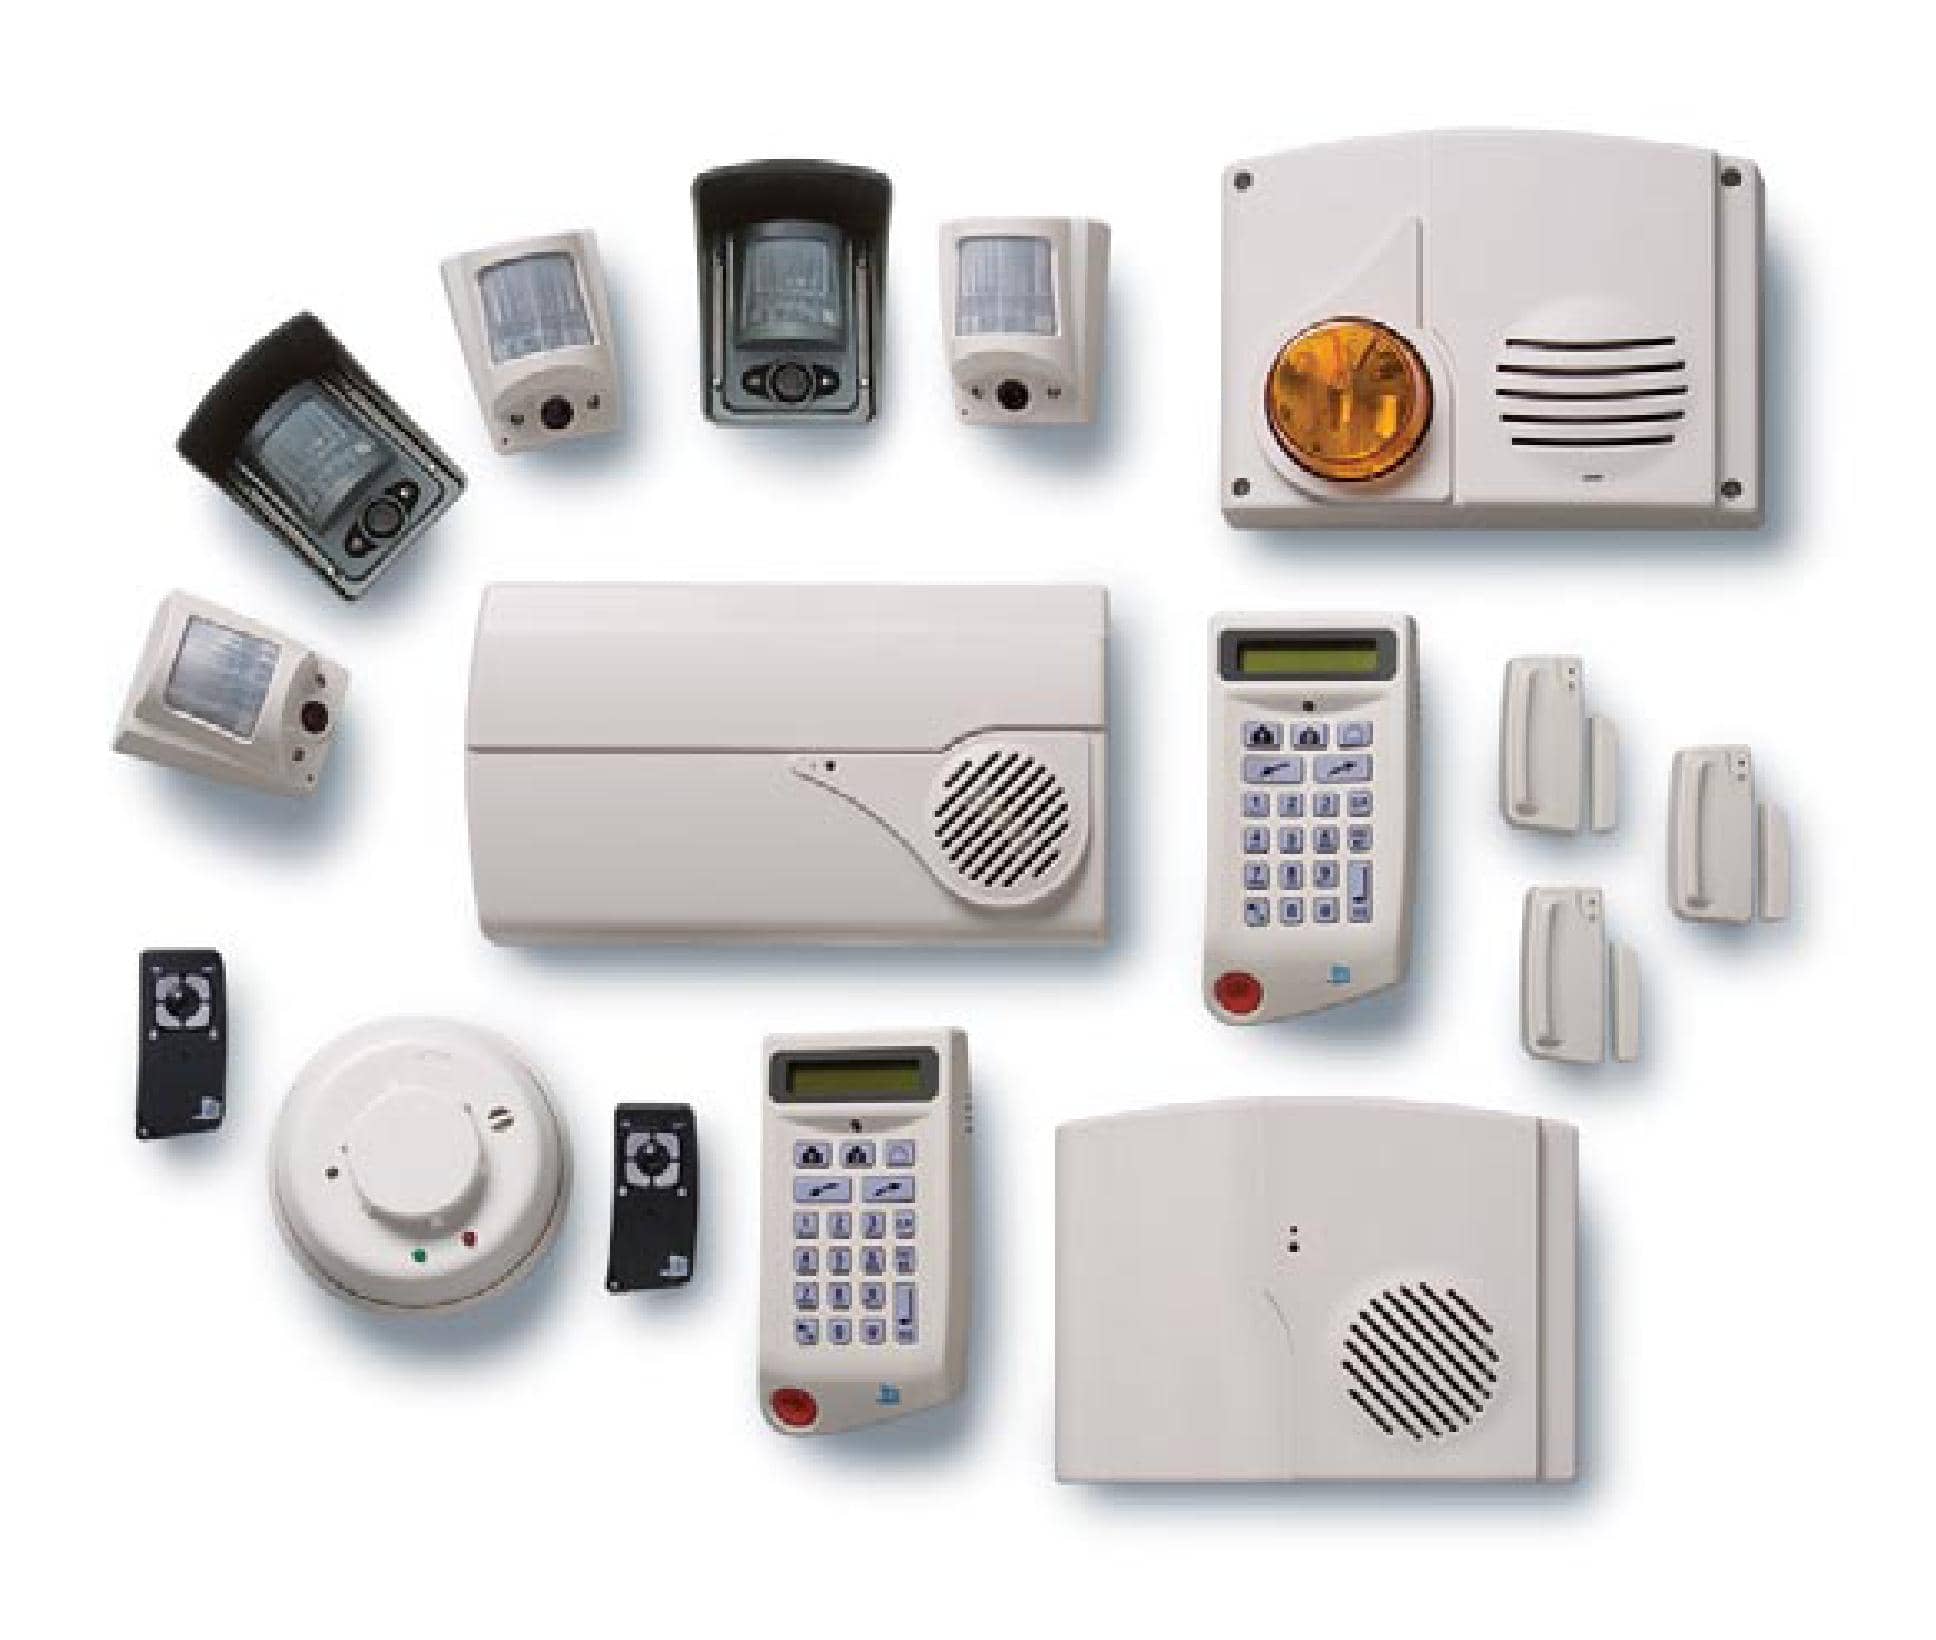 Protección y confort con la instalación de una alarma en tu hogar